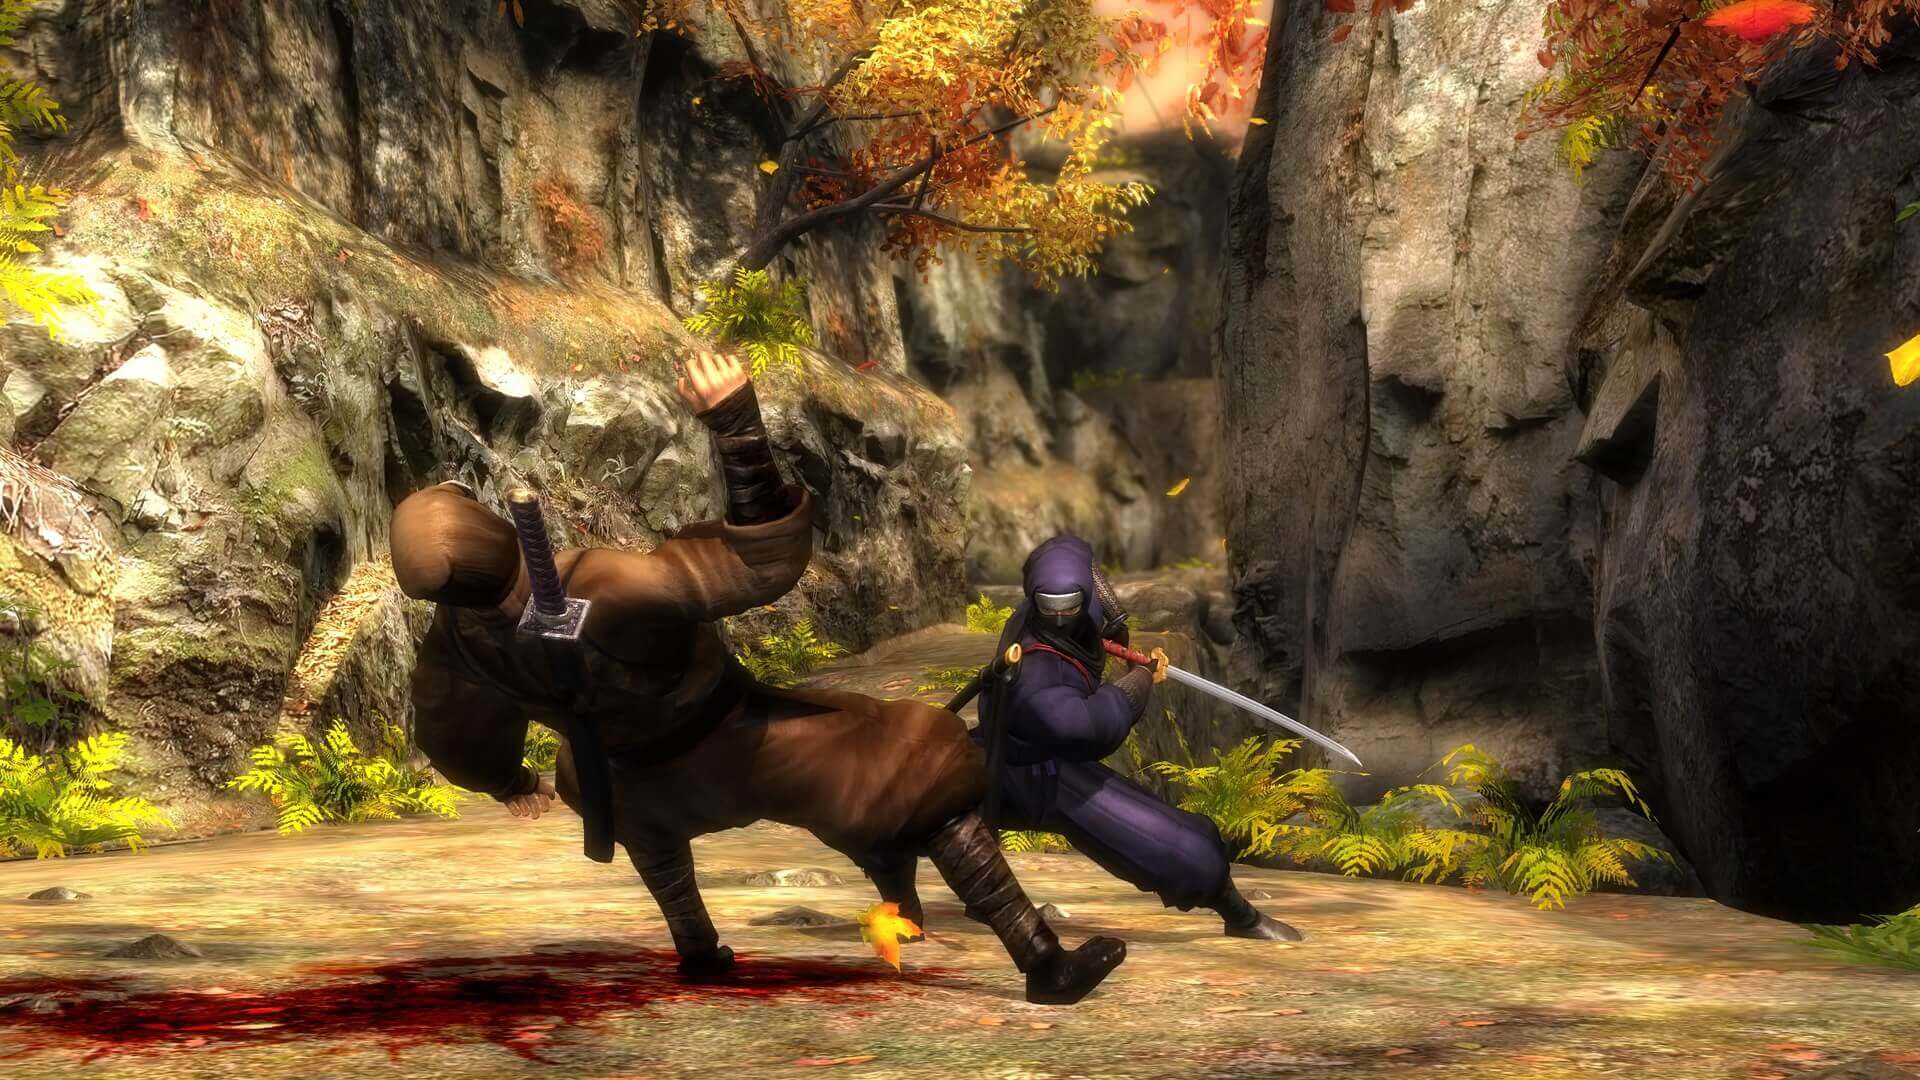 Ninja Gaiden II voltou para loja do Xbox, e pode ser por um bom